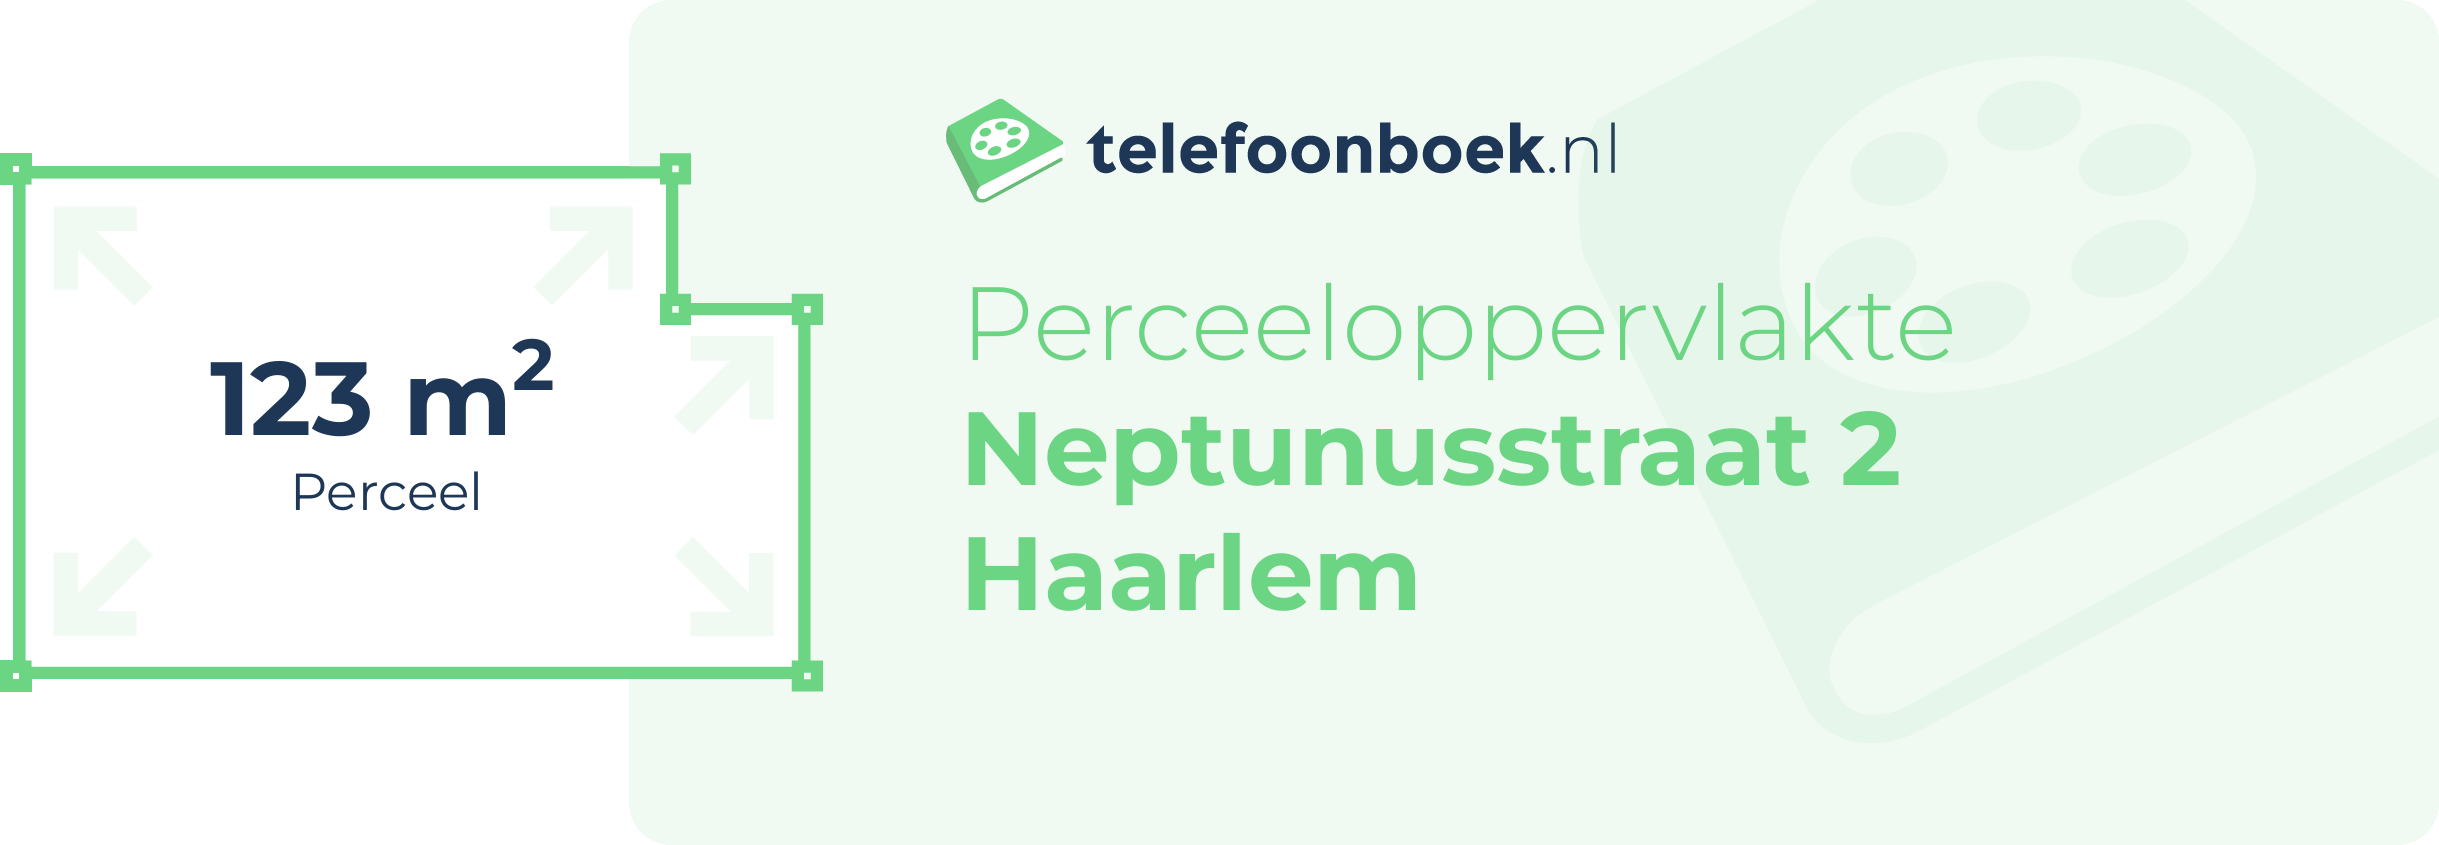 Perceeloppervlakte Neptunusstraat 2 Haarlem